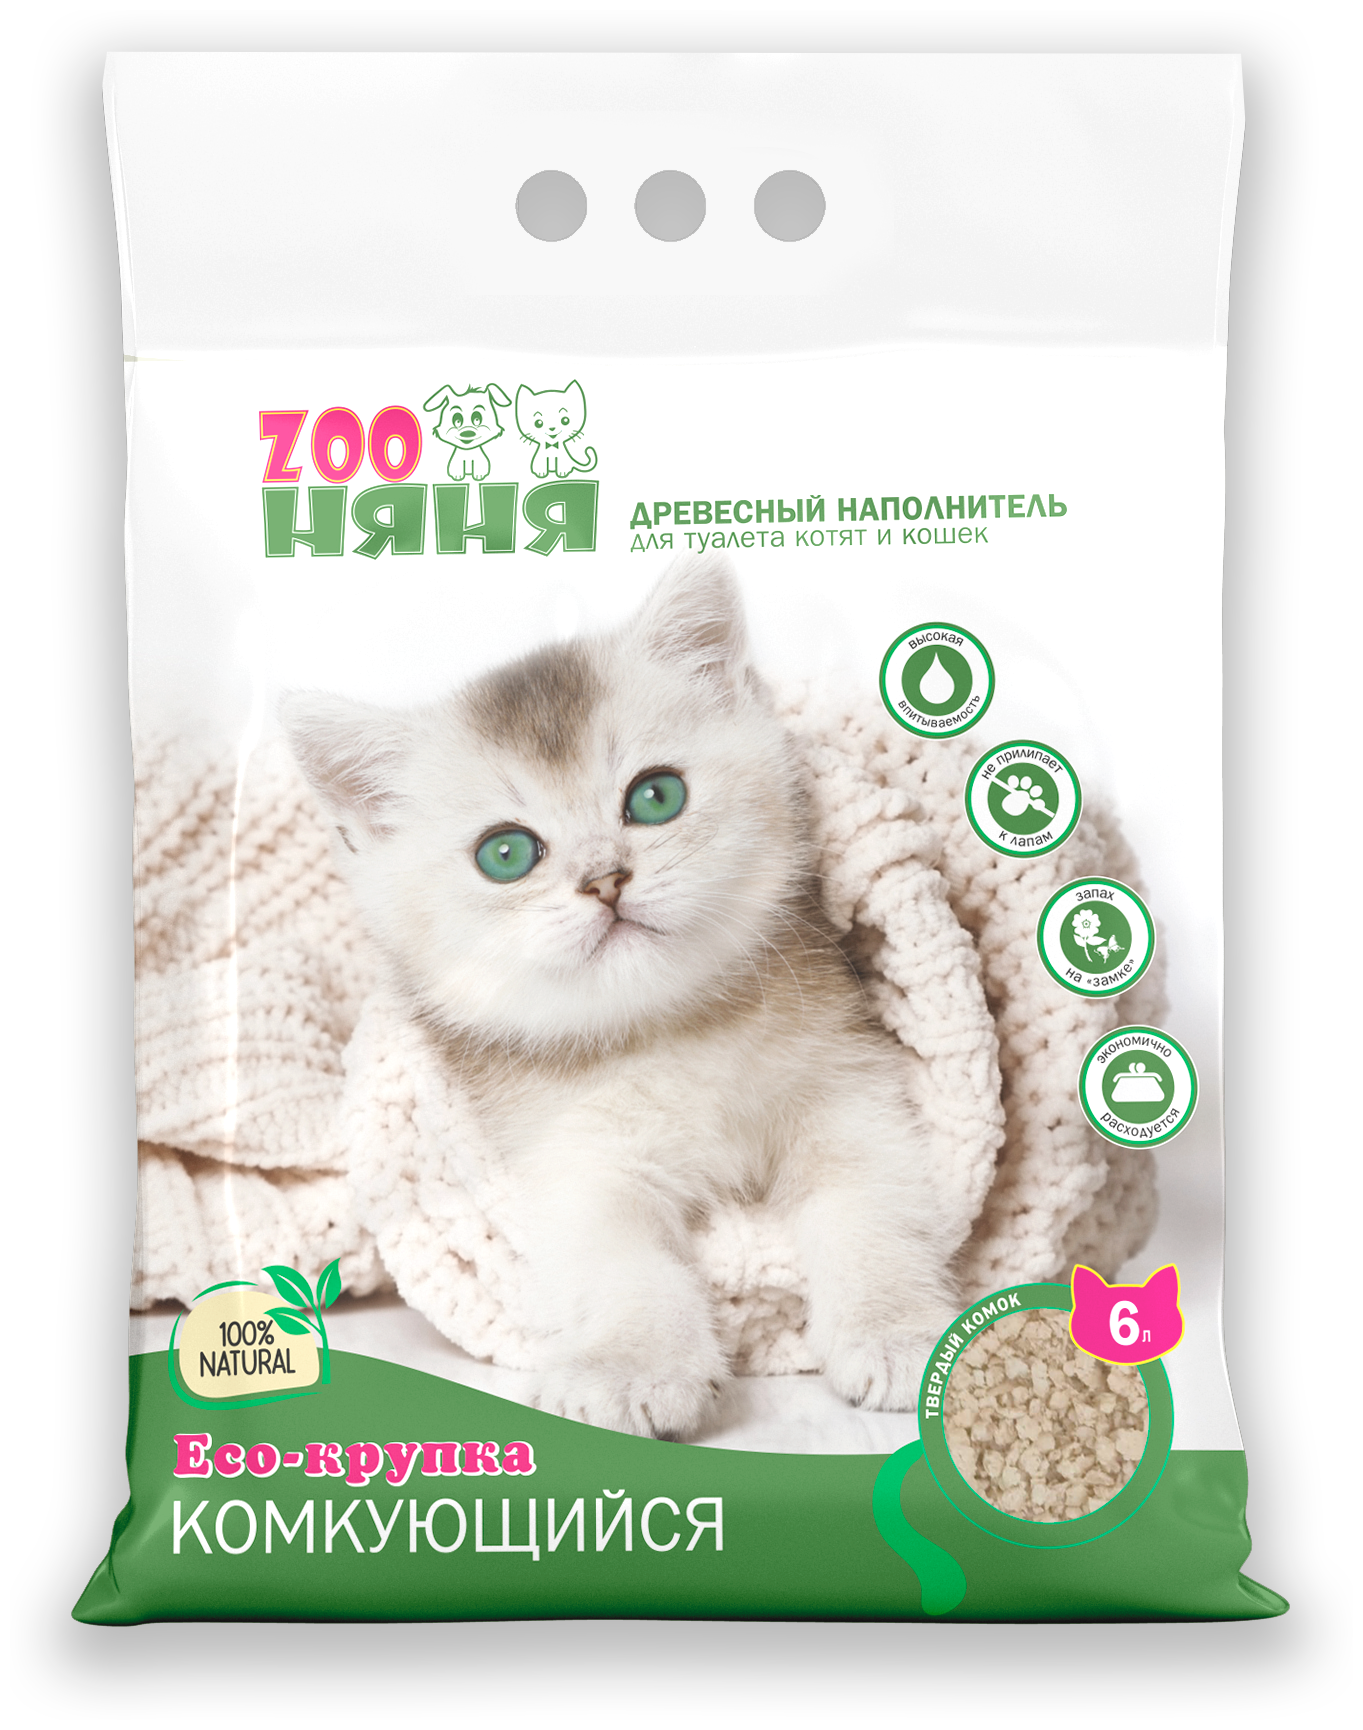 Древесный наполнитель для туалета котят и кошек Zoo Няня Eco-крупка комкующийся 6л (2,4 кг)